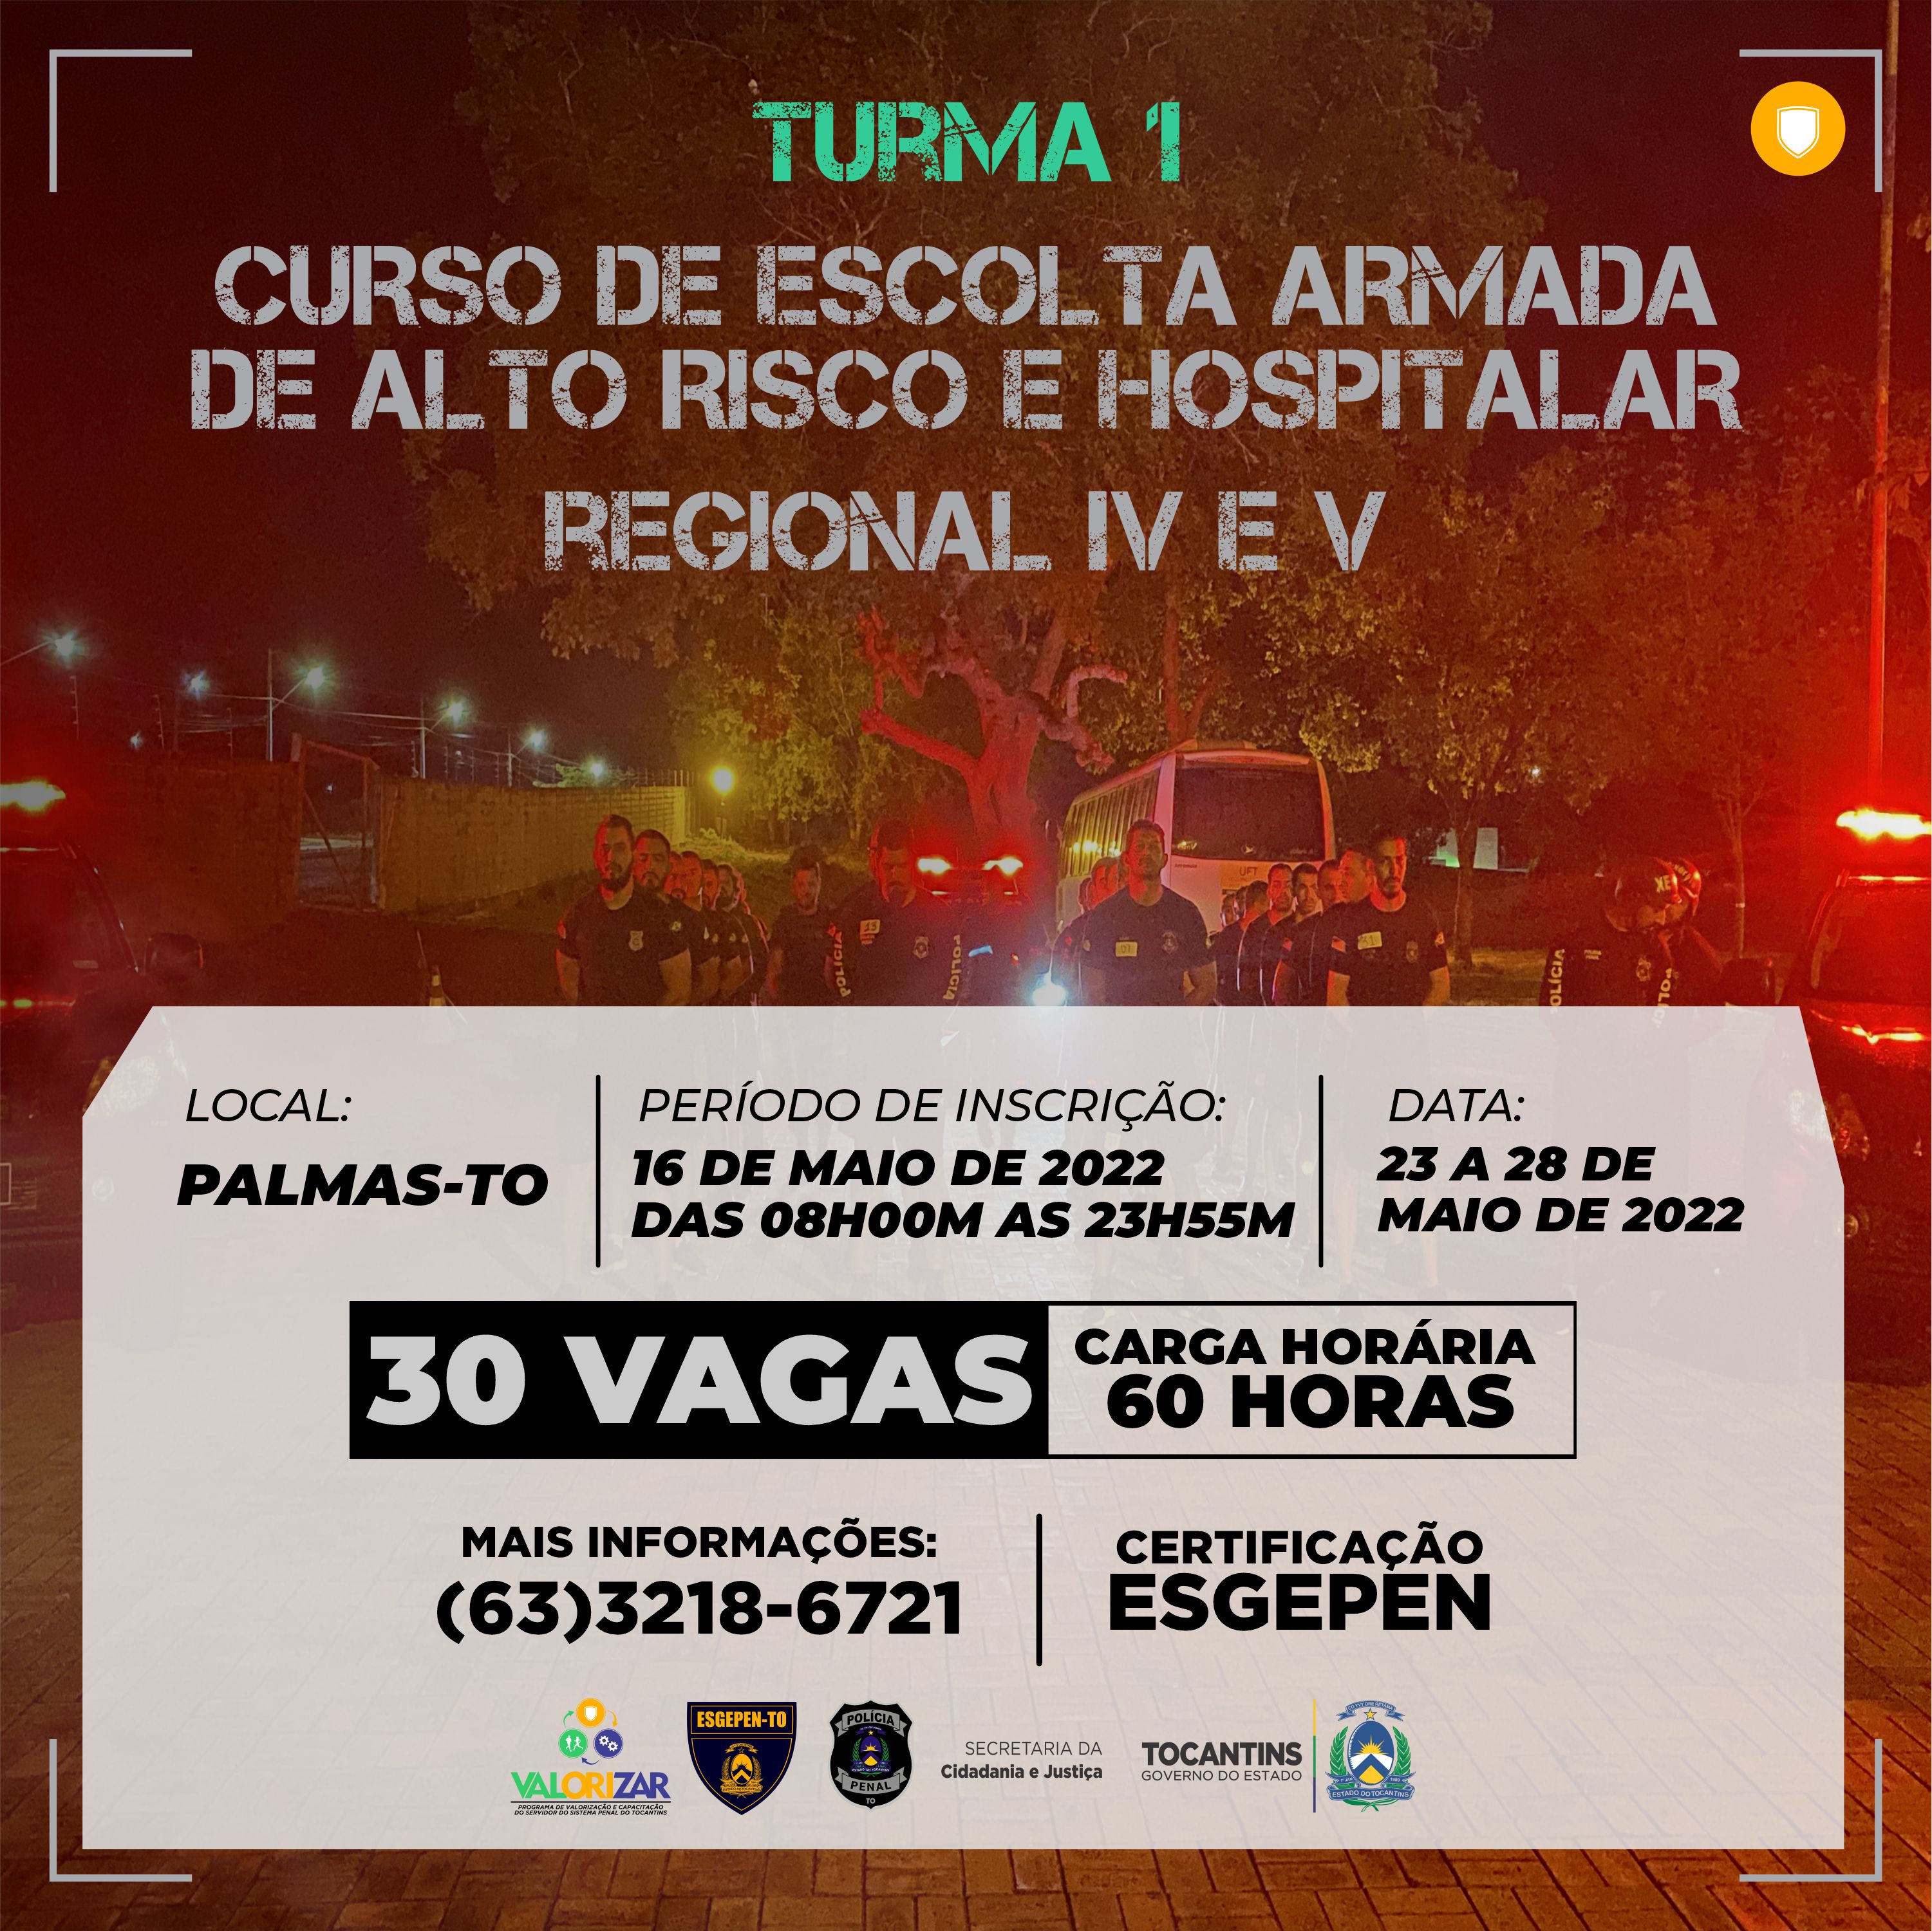 CURSO DE ESCOLTA ARMADA DE ALTO RISCO E HOSPITALAR - CEAARH - TURMA 1